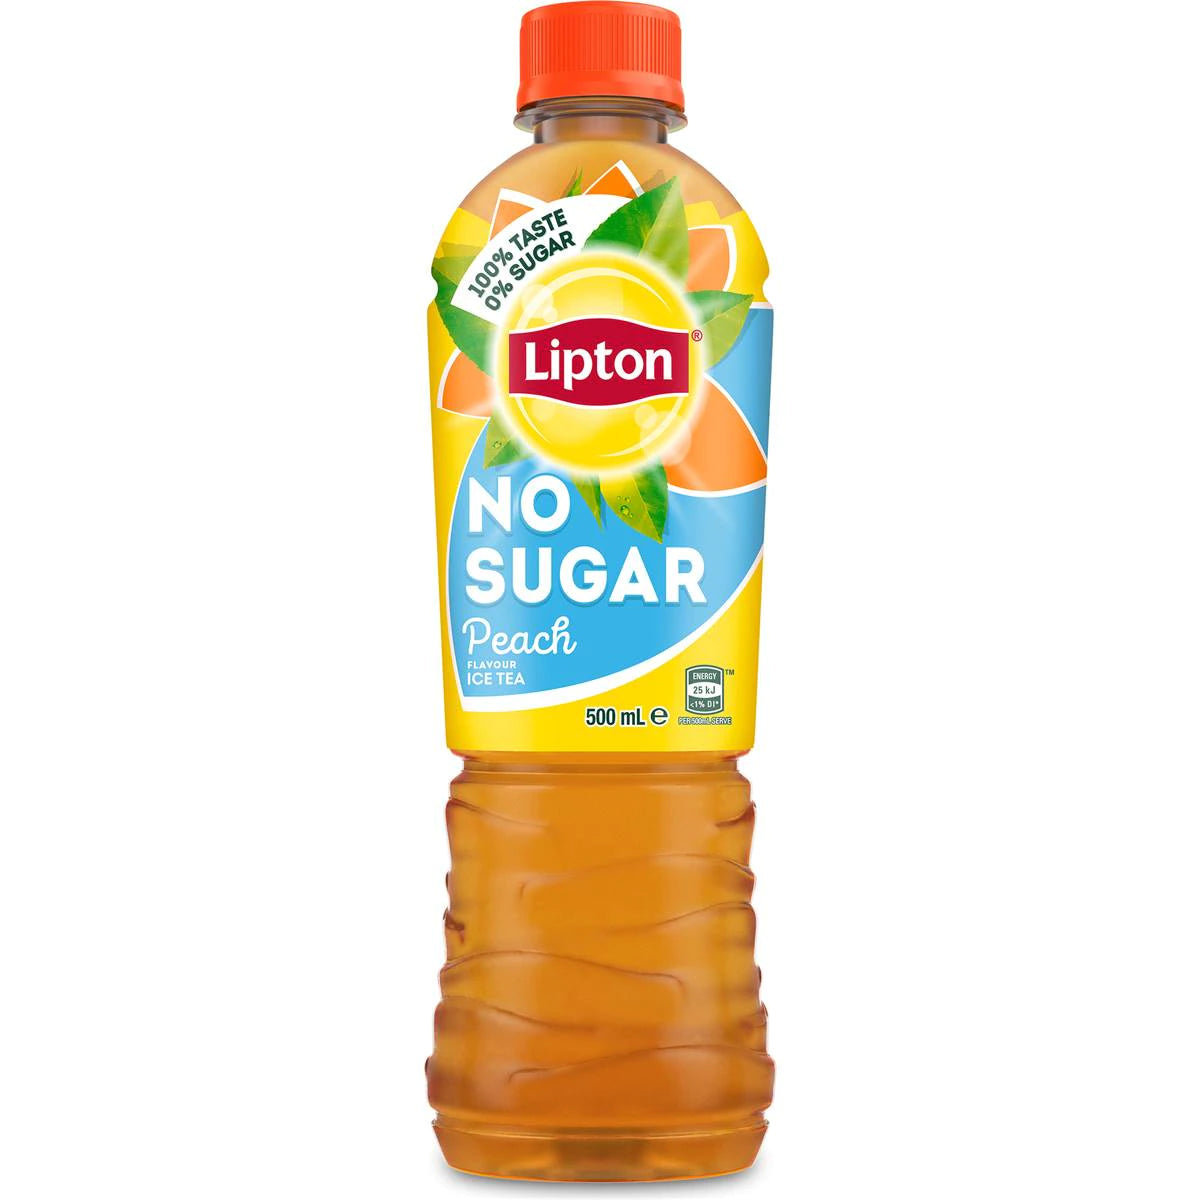 Lipton Iced Tea No Sugar Peach 500ml